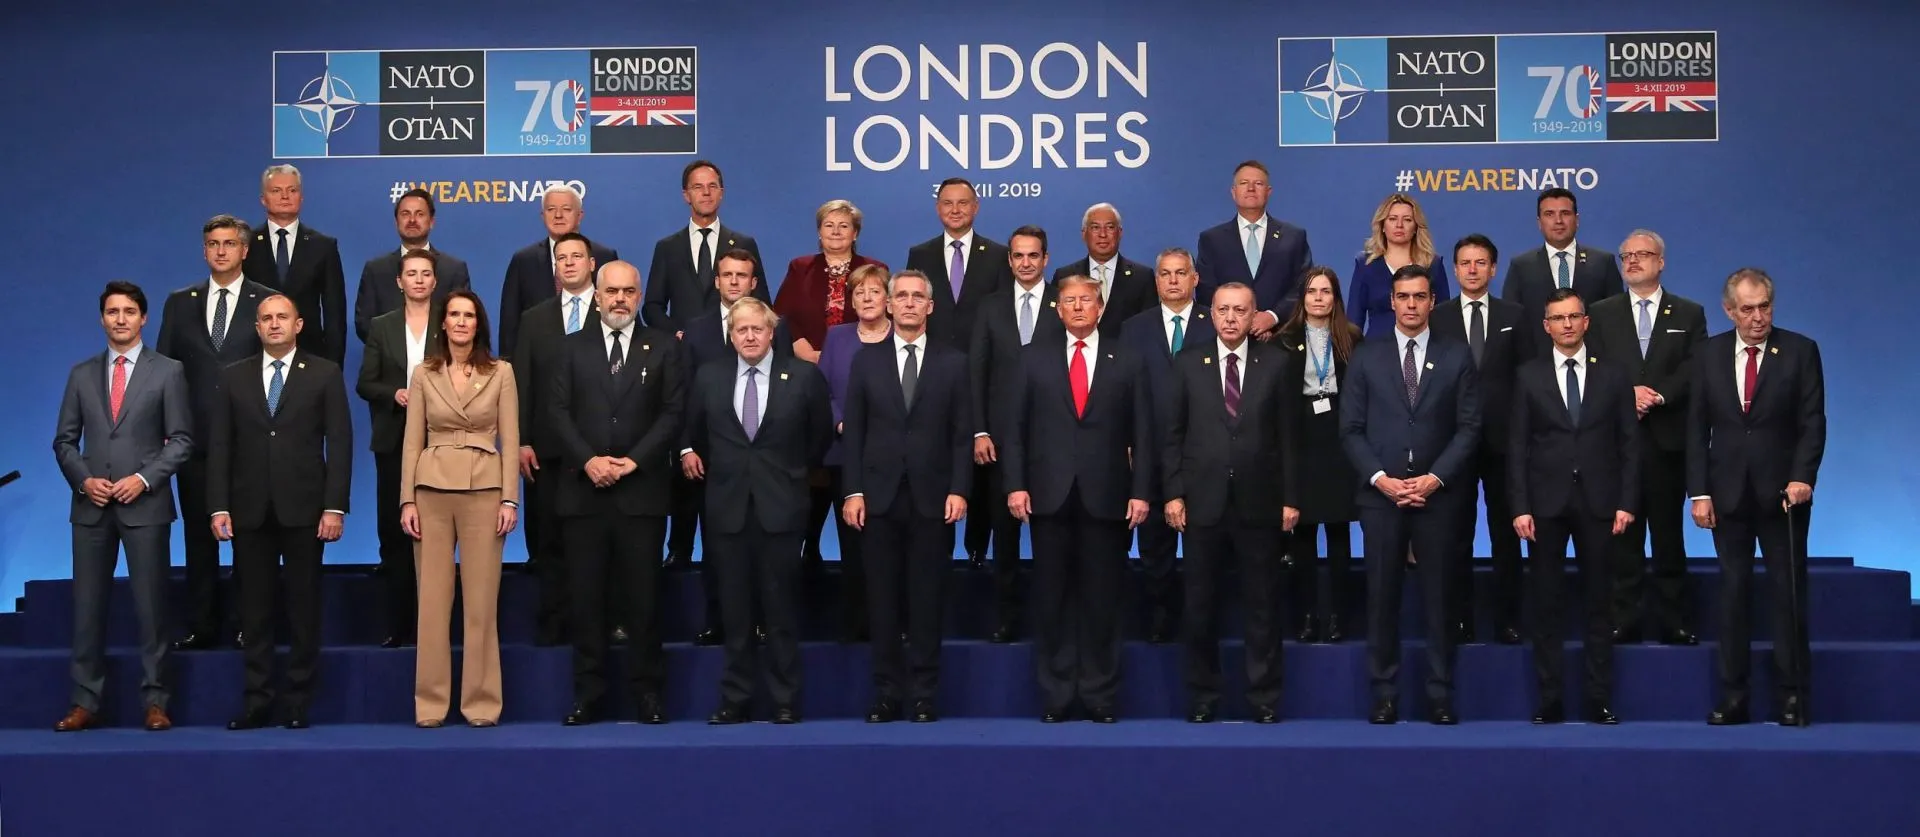 Lãnh đạo 29 nước thành viên chụp ảnh lưu niệm tại London, Anh nhân 70 năm thành lập NATO.